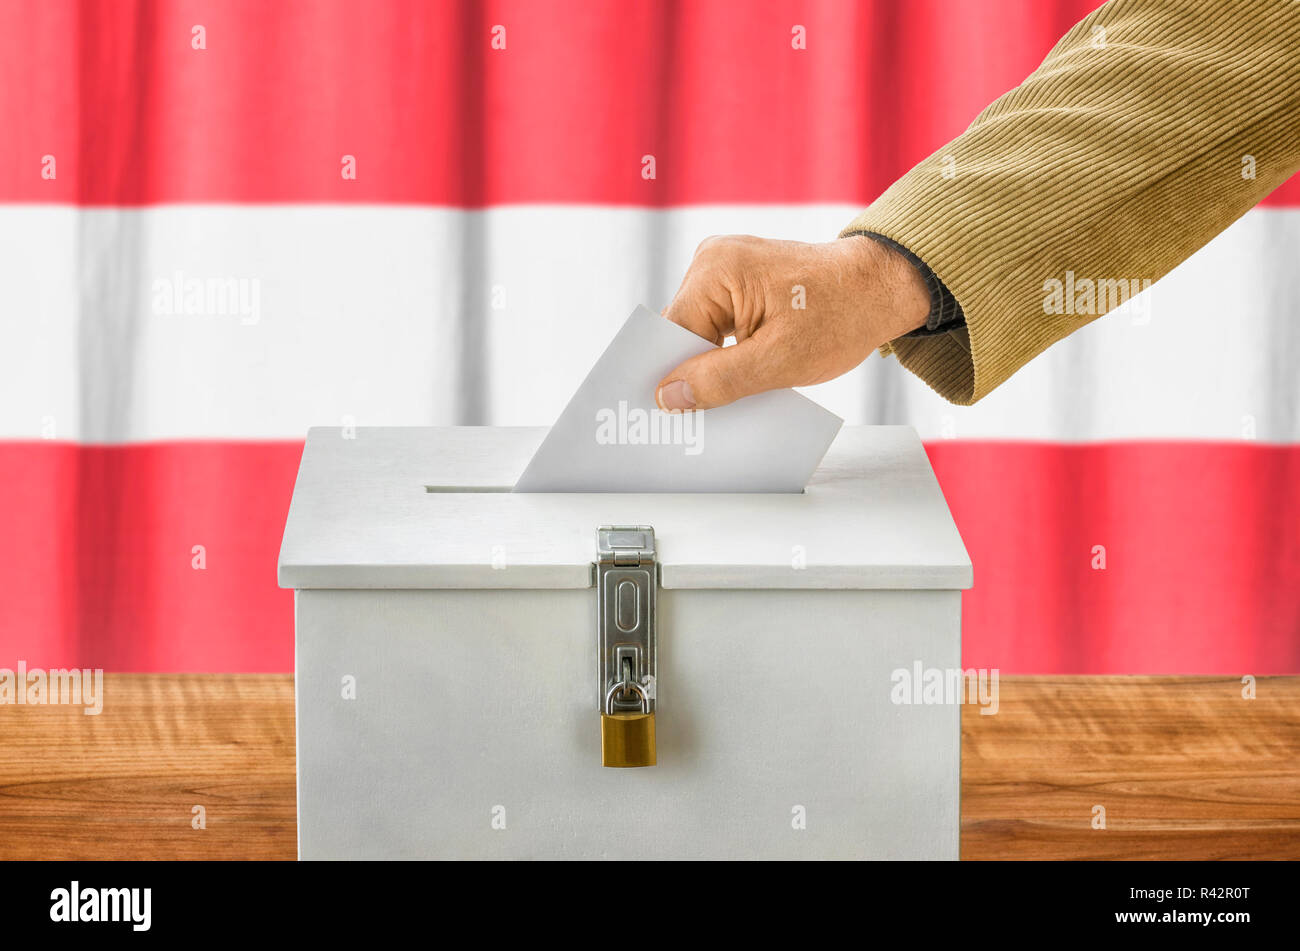 Mann die Stimmzettel in die Wahlurne - Österreich Stockfoto